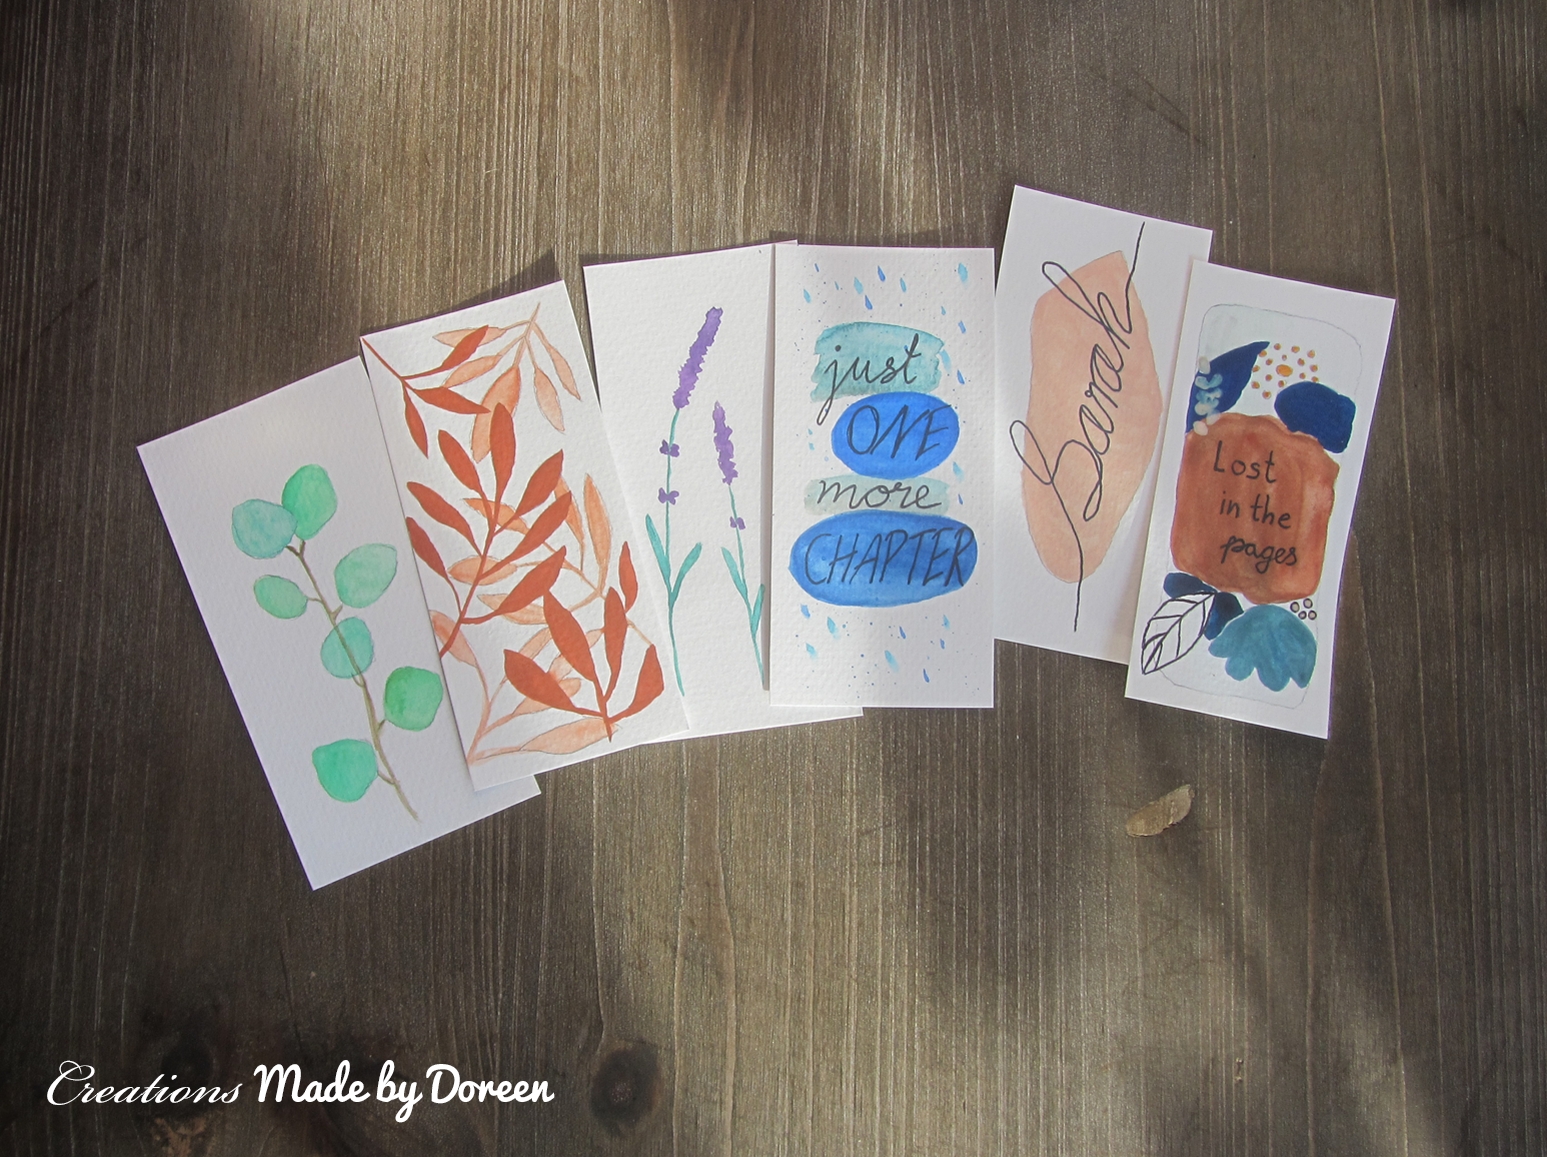 Projekt für eine Freundin #Watercolor #Handlettering #Lesezeichen #Bookmarks #Buchliebe #Minimalistic